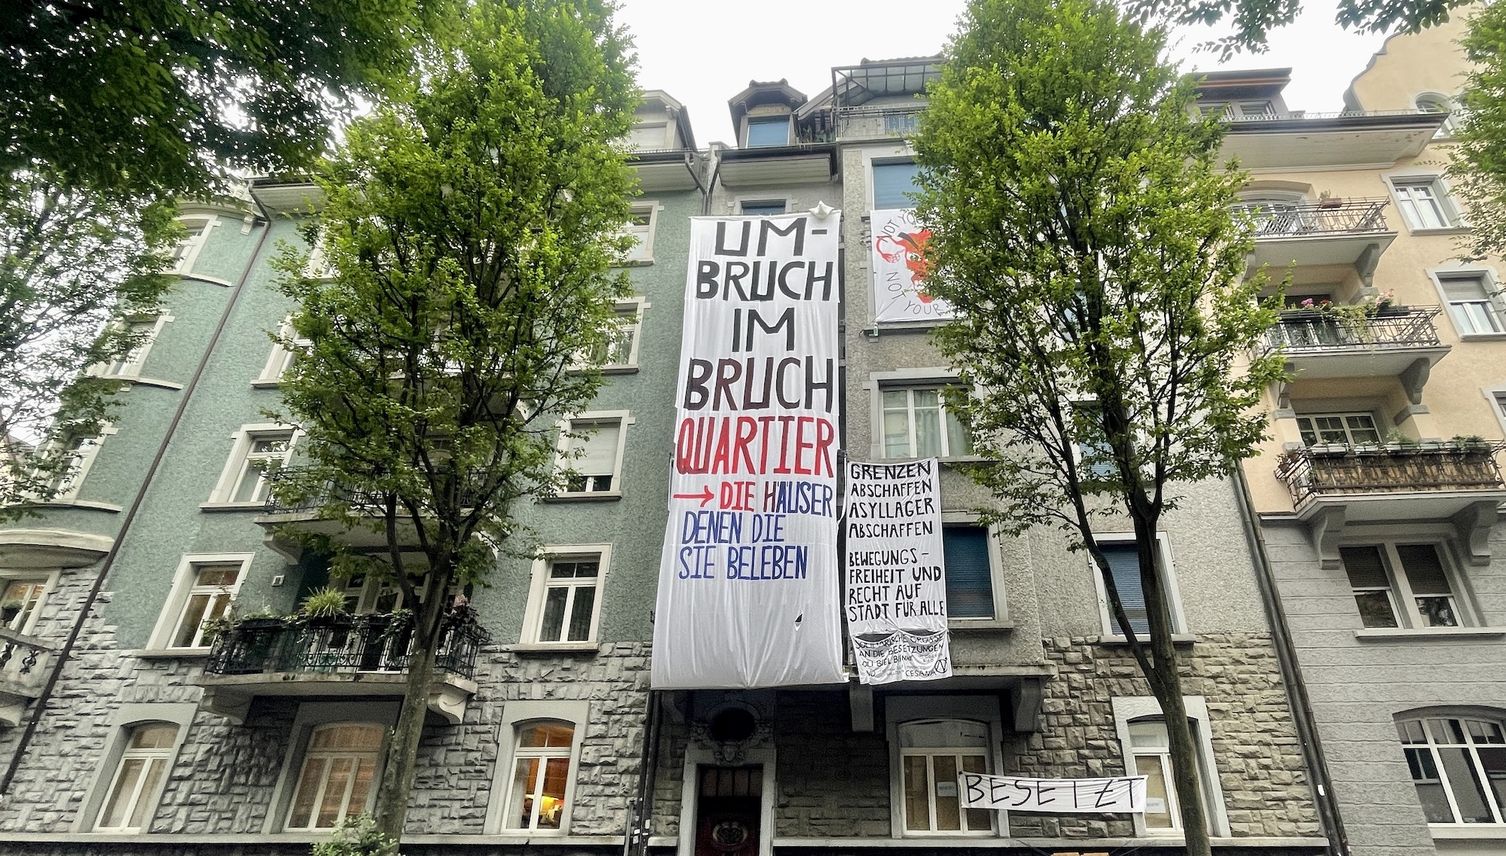 Besetzung Bruchstrasse: So geht es jetzt weiter